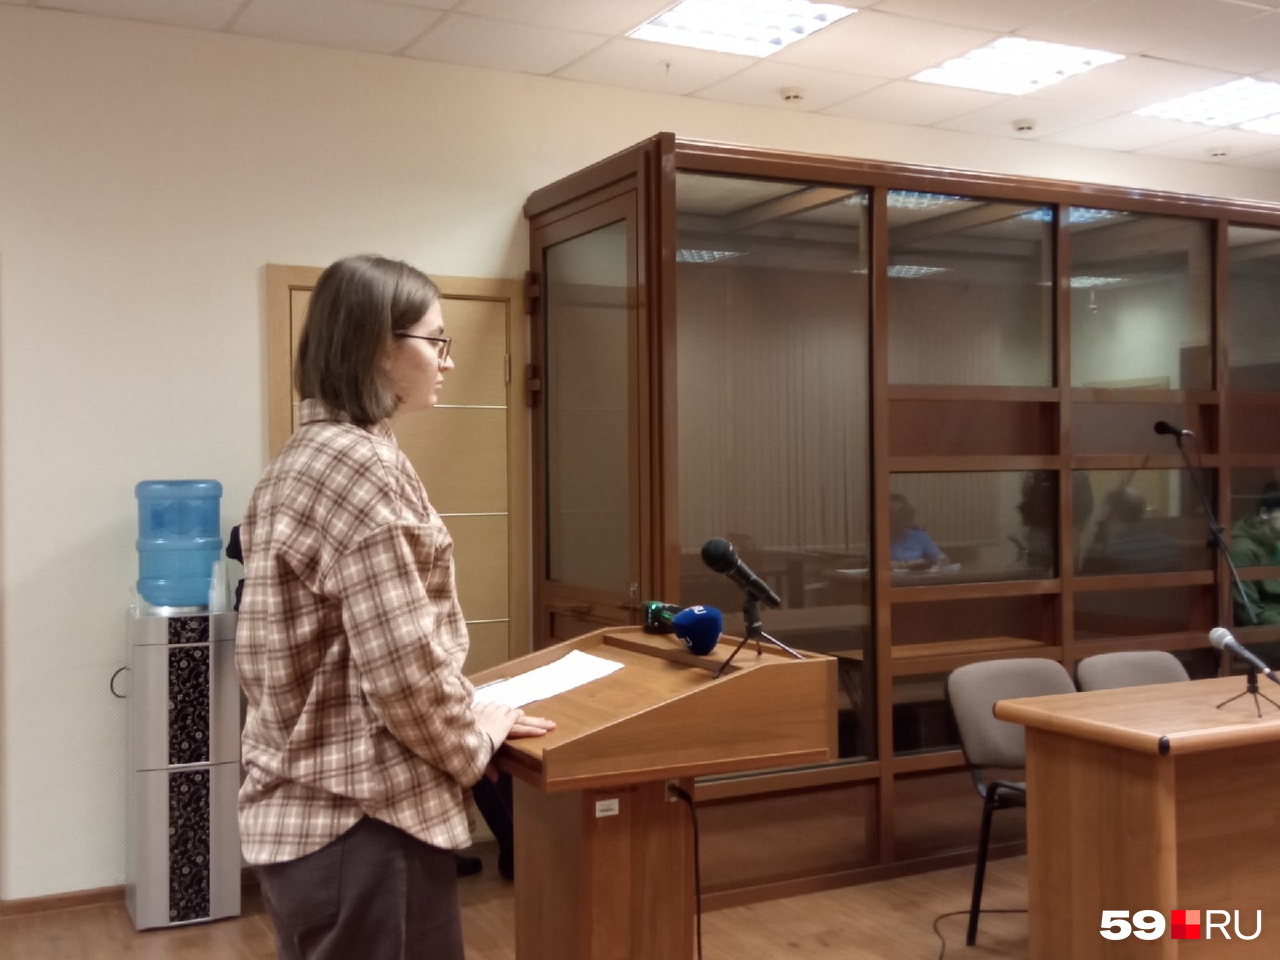 Юлия Тернавская со своими одногруппниками пряталась в аудитории и строила баррикады